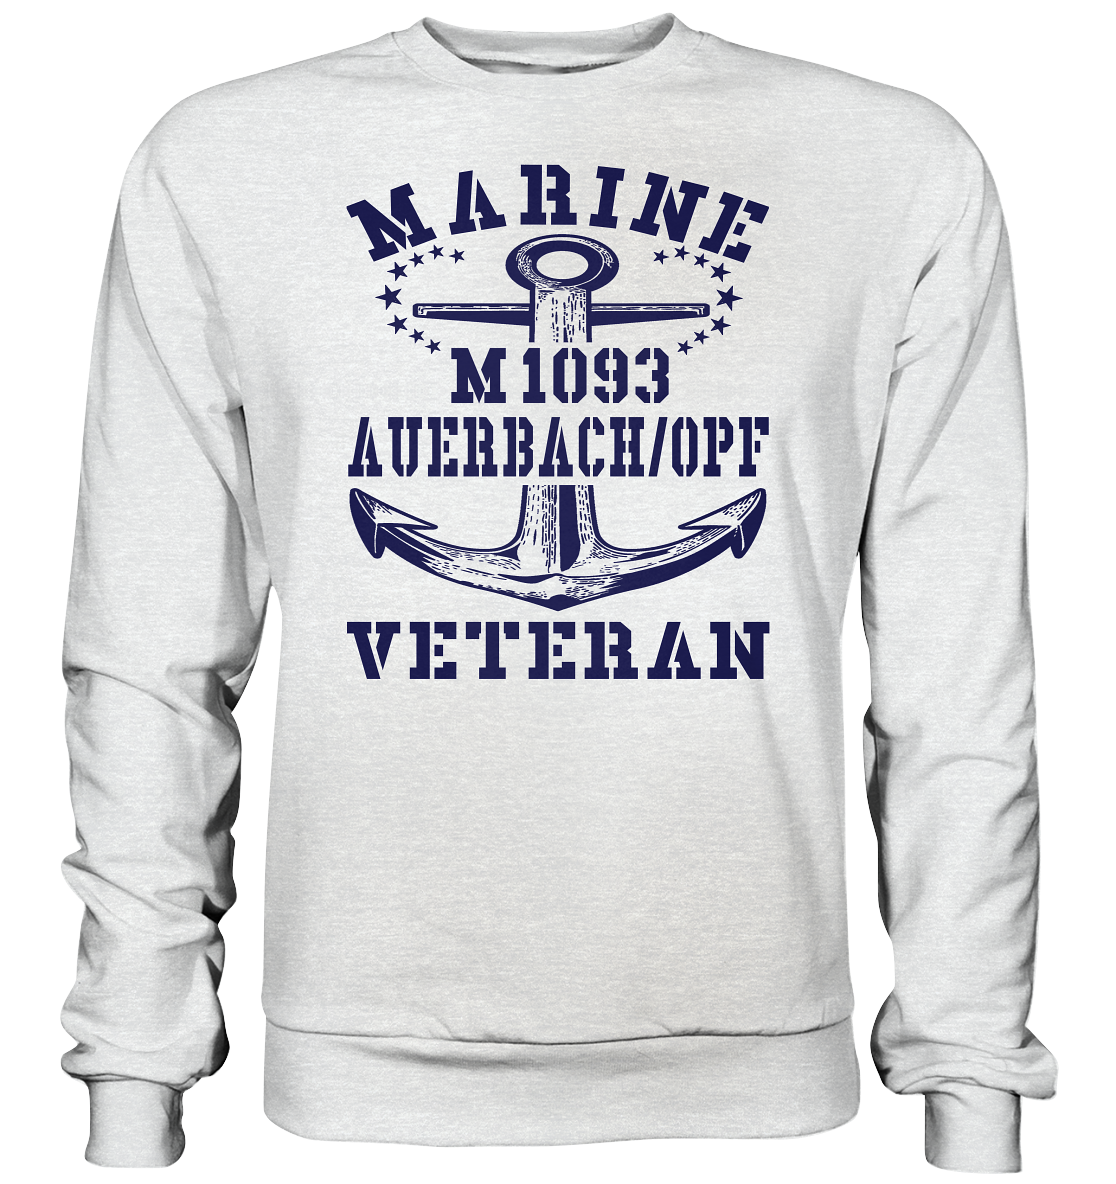 M1093 AUERBACH/OPF Marine Veteran - Premium Sweatshirt